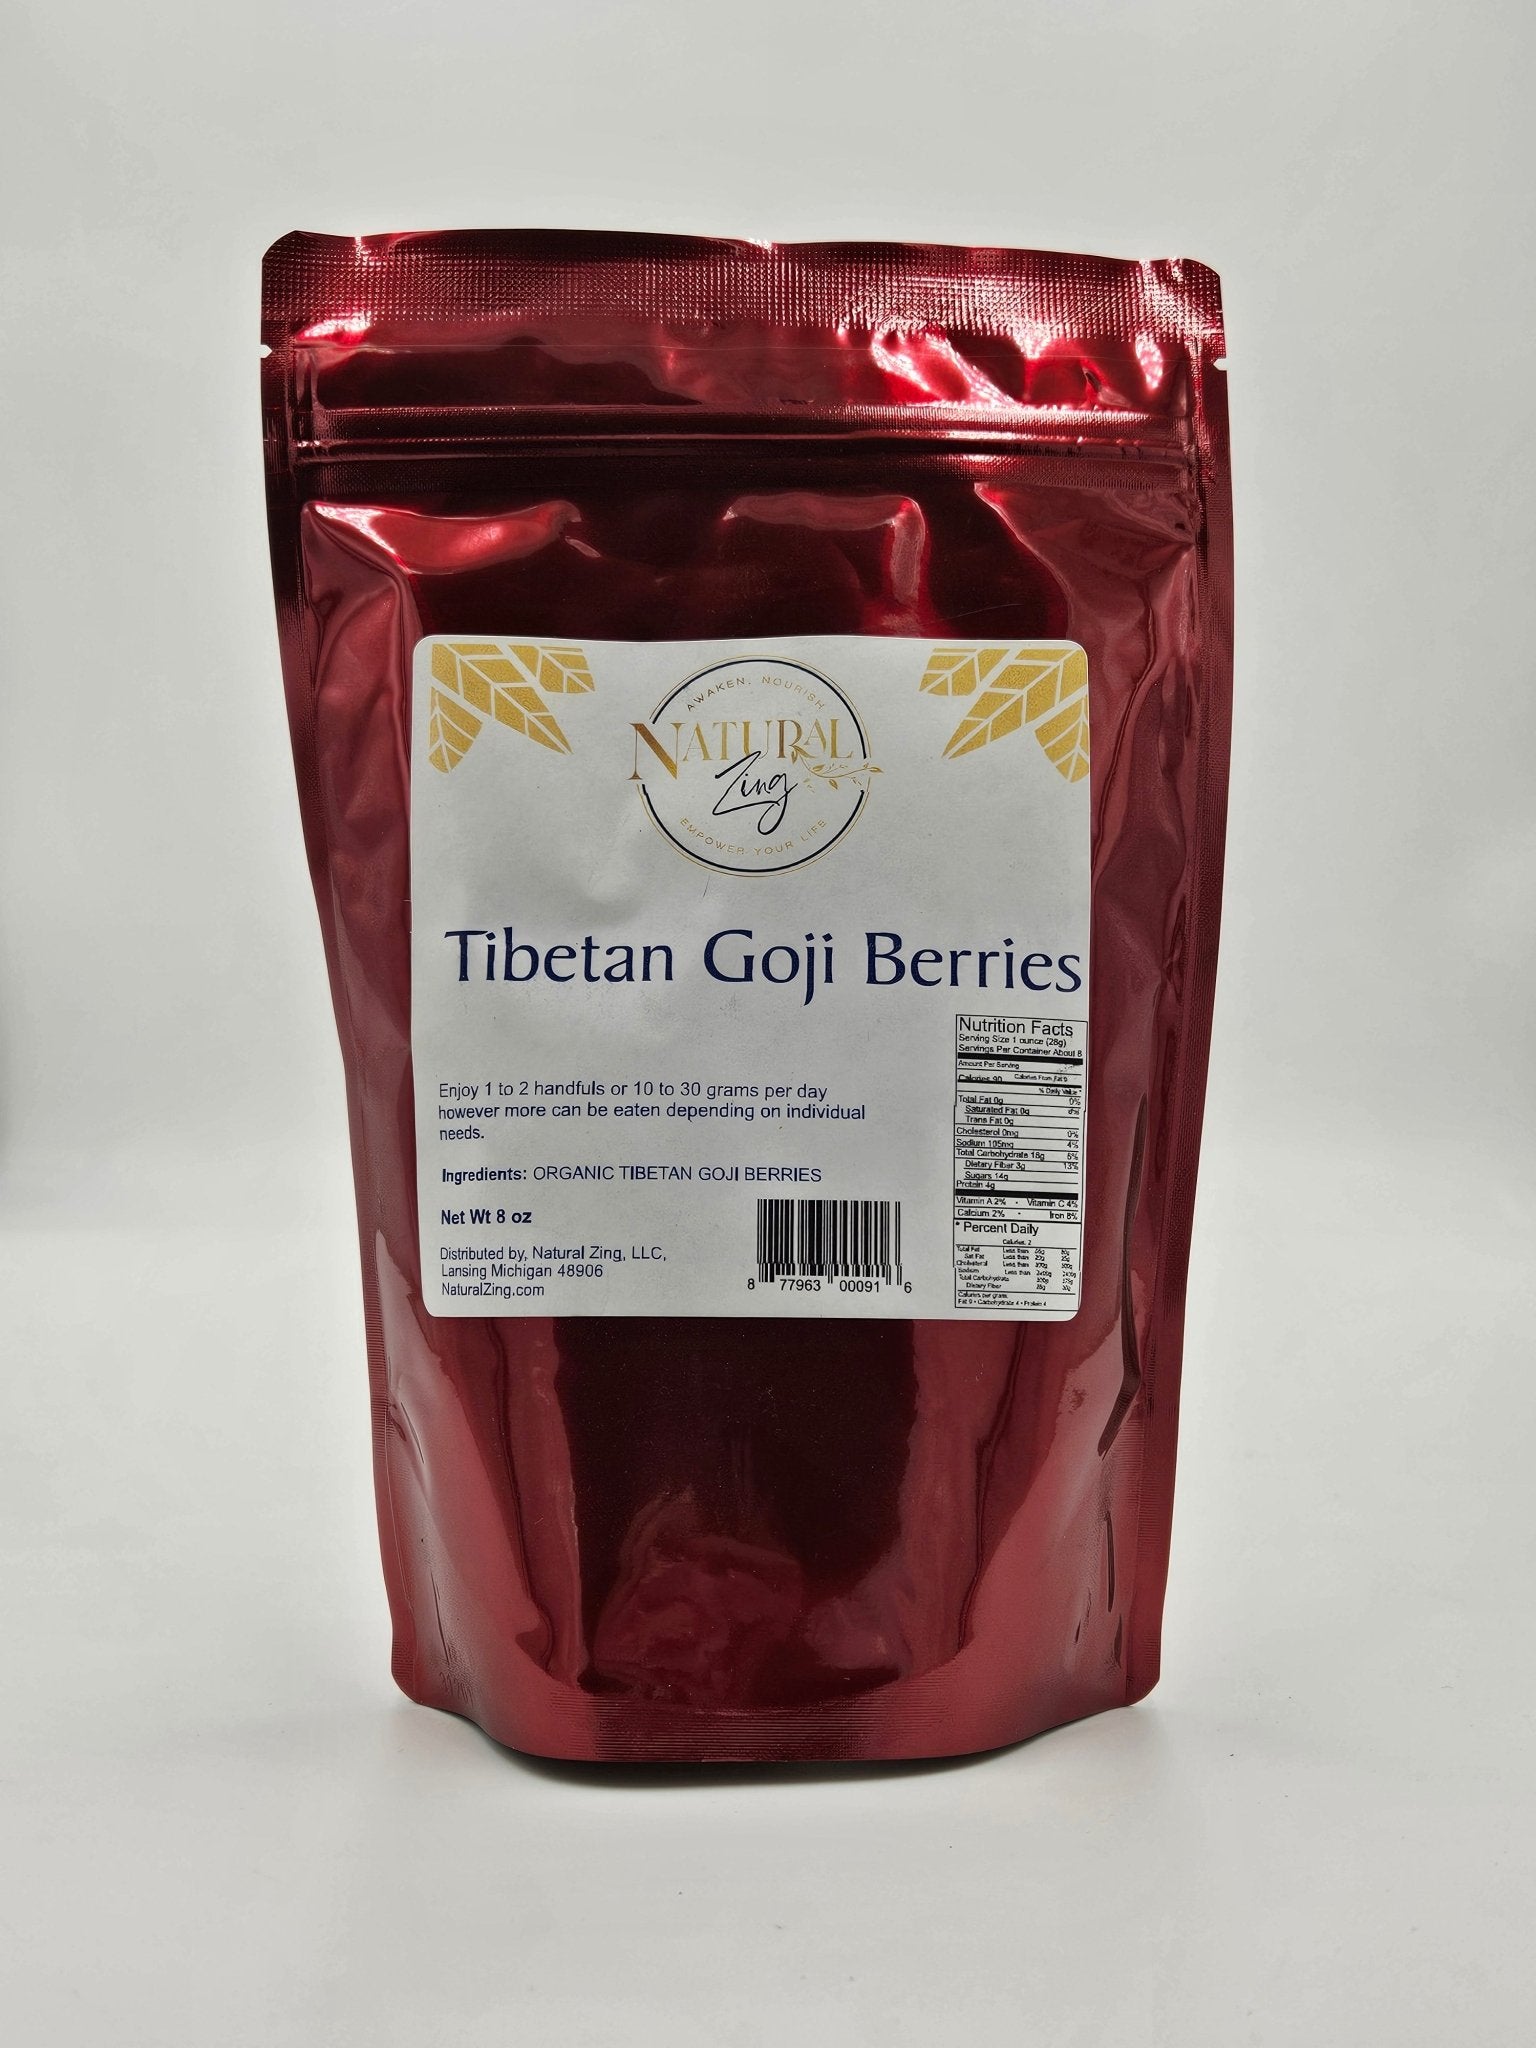 Authentic Tibetan Goji Berries 8 oz - Natural Zing